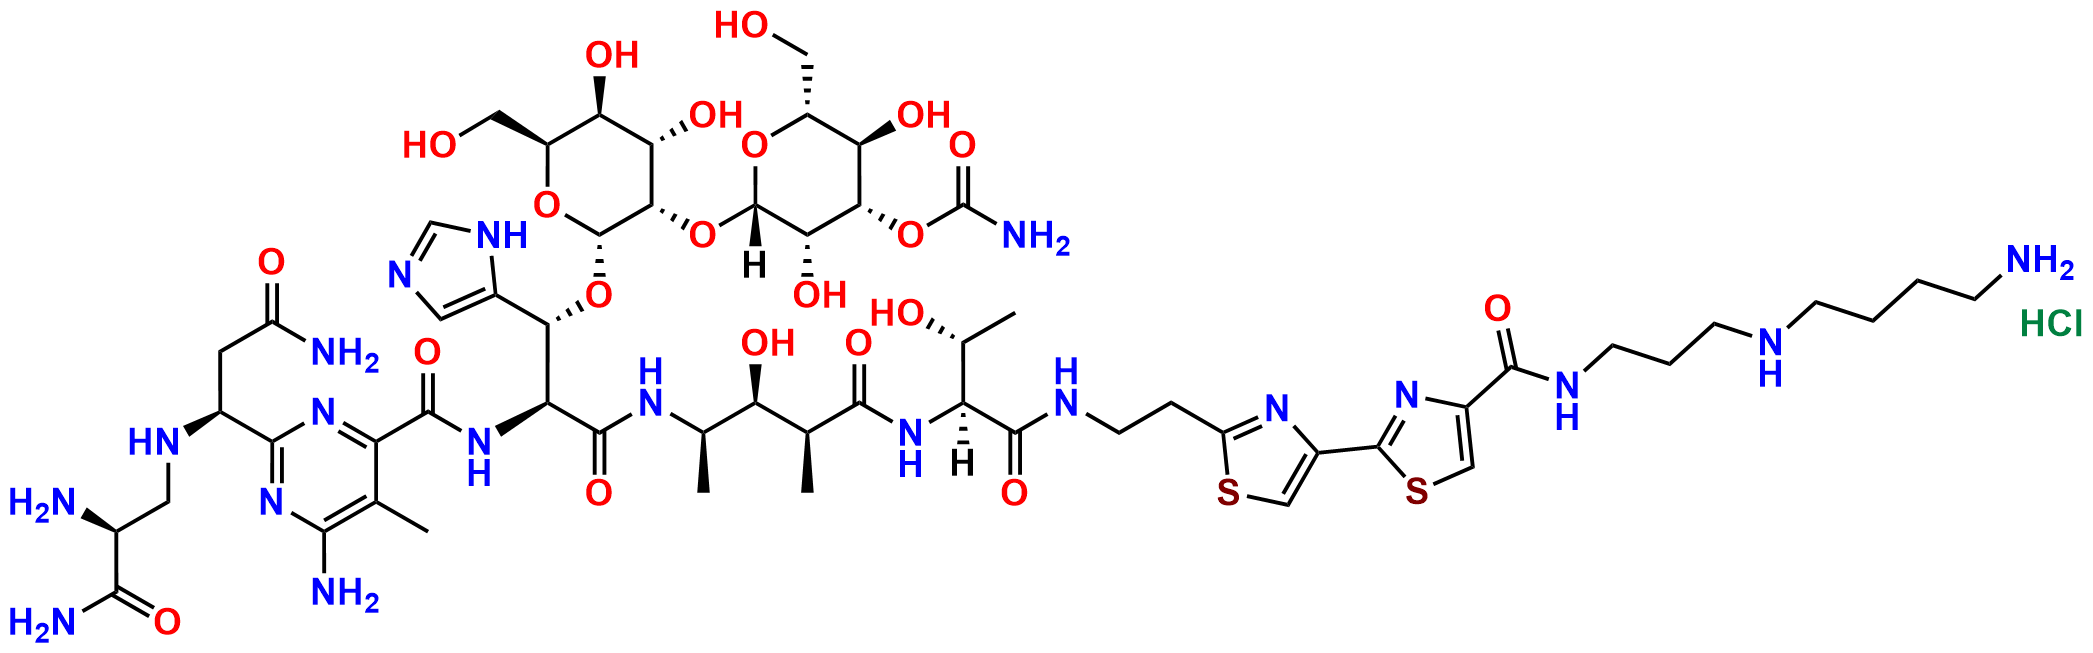 Bleomycin A5